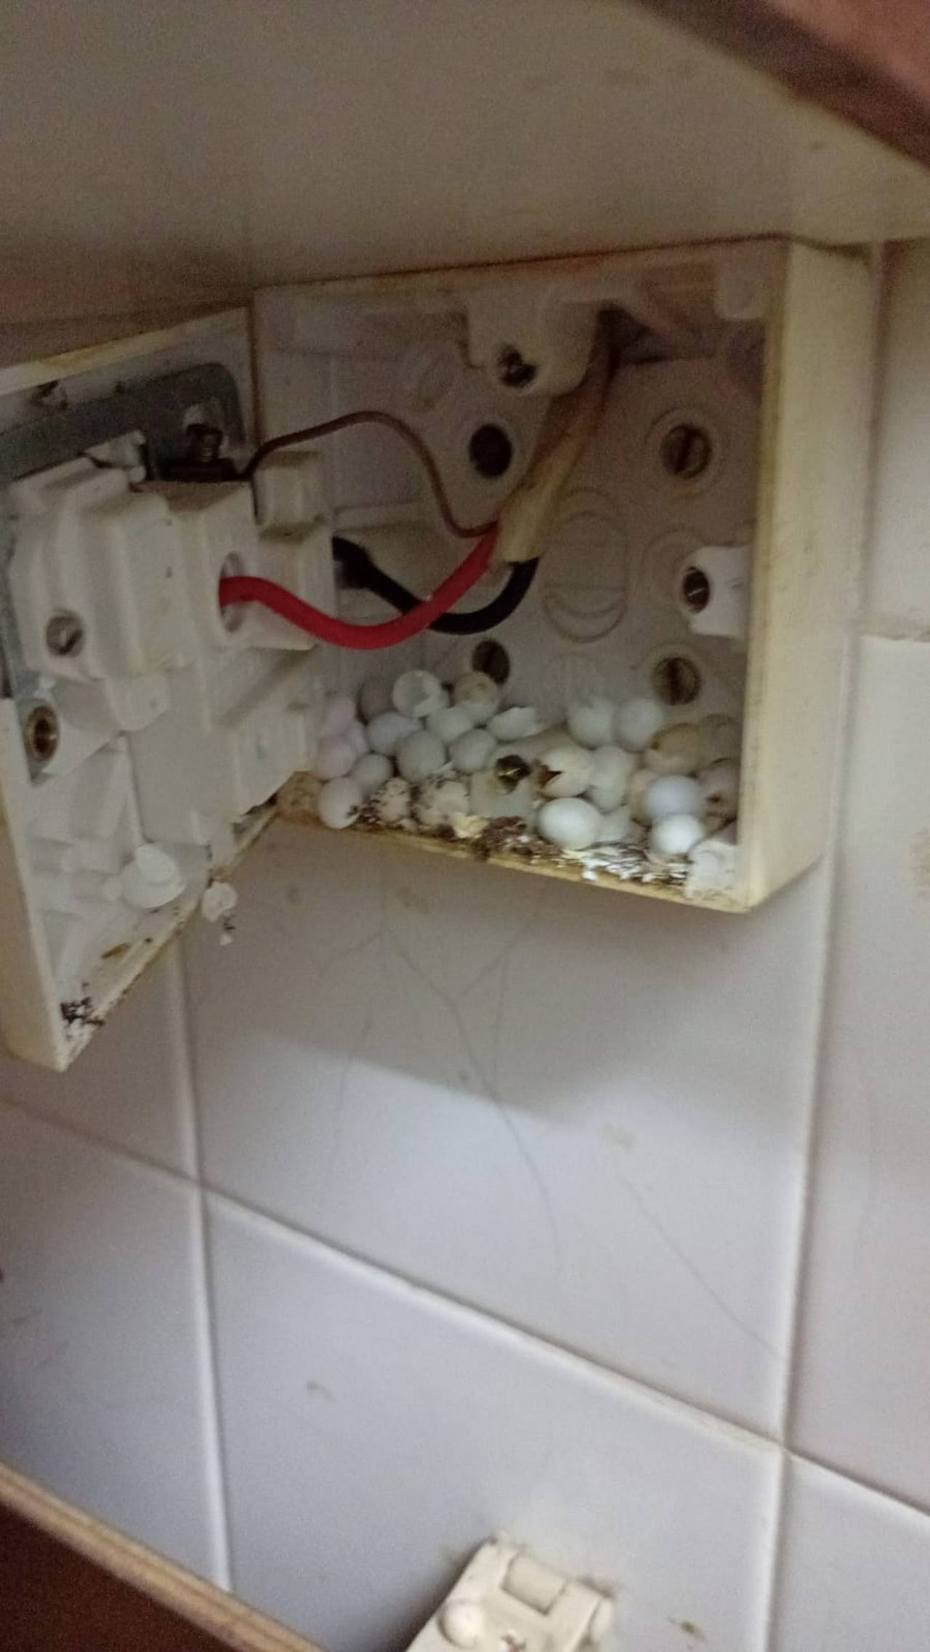 網友表示因家中電力出現問題，便找人維修，竟發現有壁虎產了一堆蛋在電源開關中。圖截自臉書社團「家居裝修分享谷」